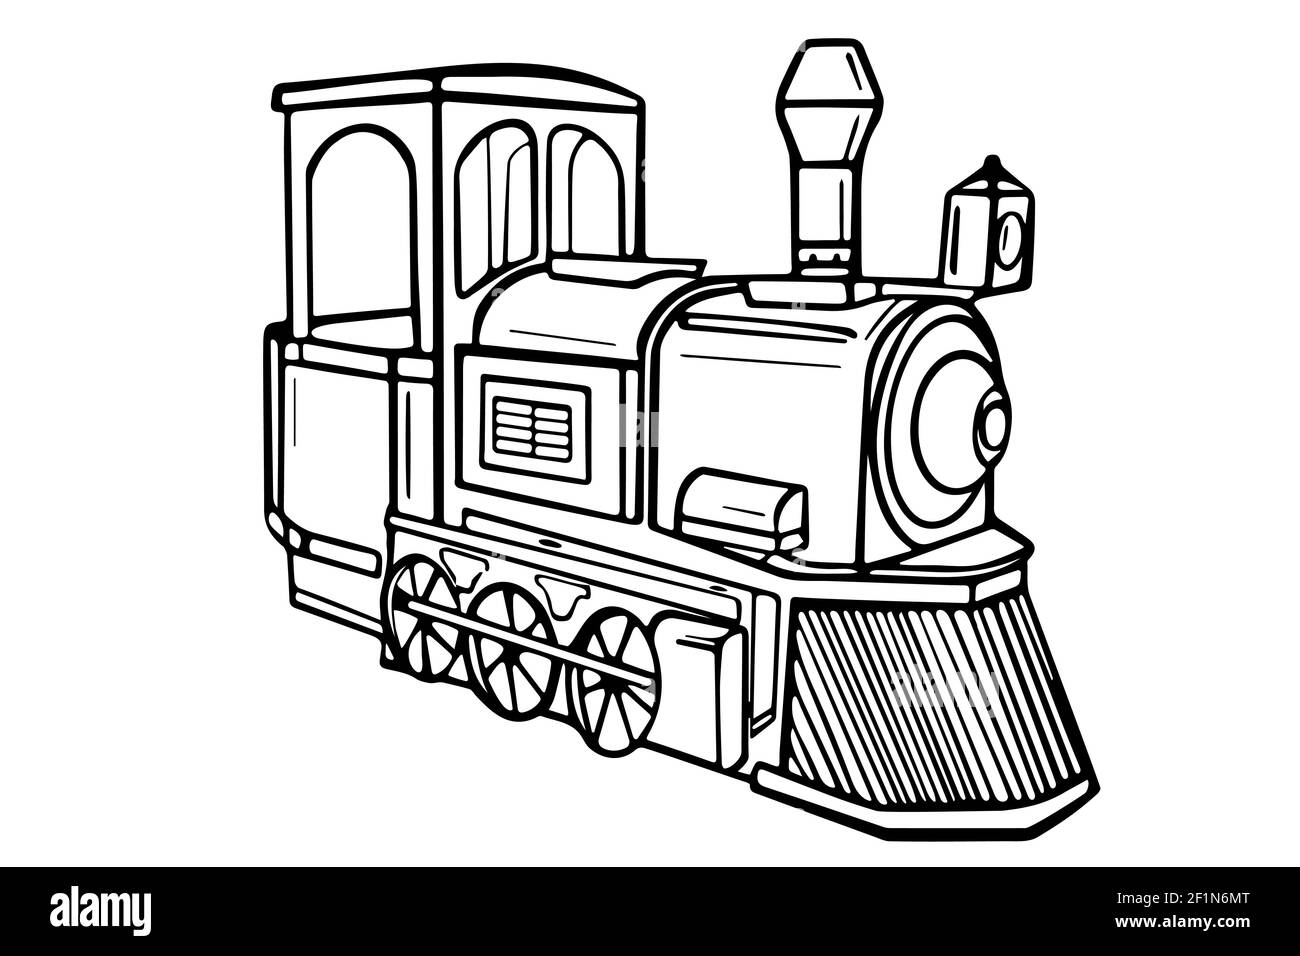 Skizze Dampflokomotive. Handgezeichnete Vektorgrafik. Schwarzer Zug auf weißem Hintergrund. Stock Vektor